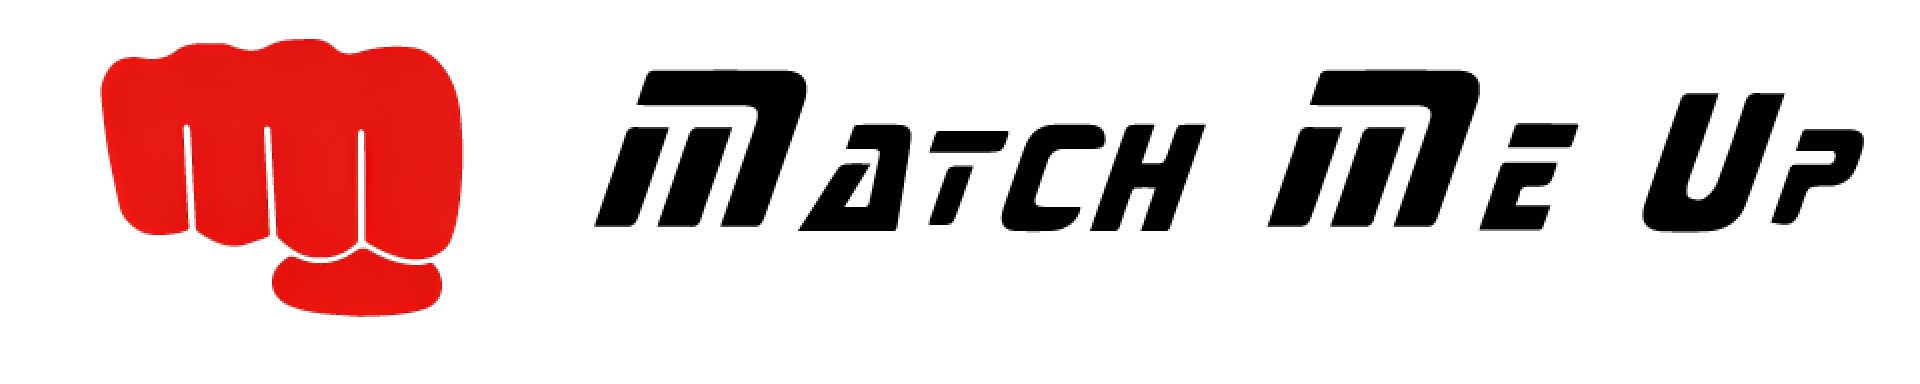 MatchMeUp logo